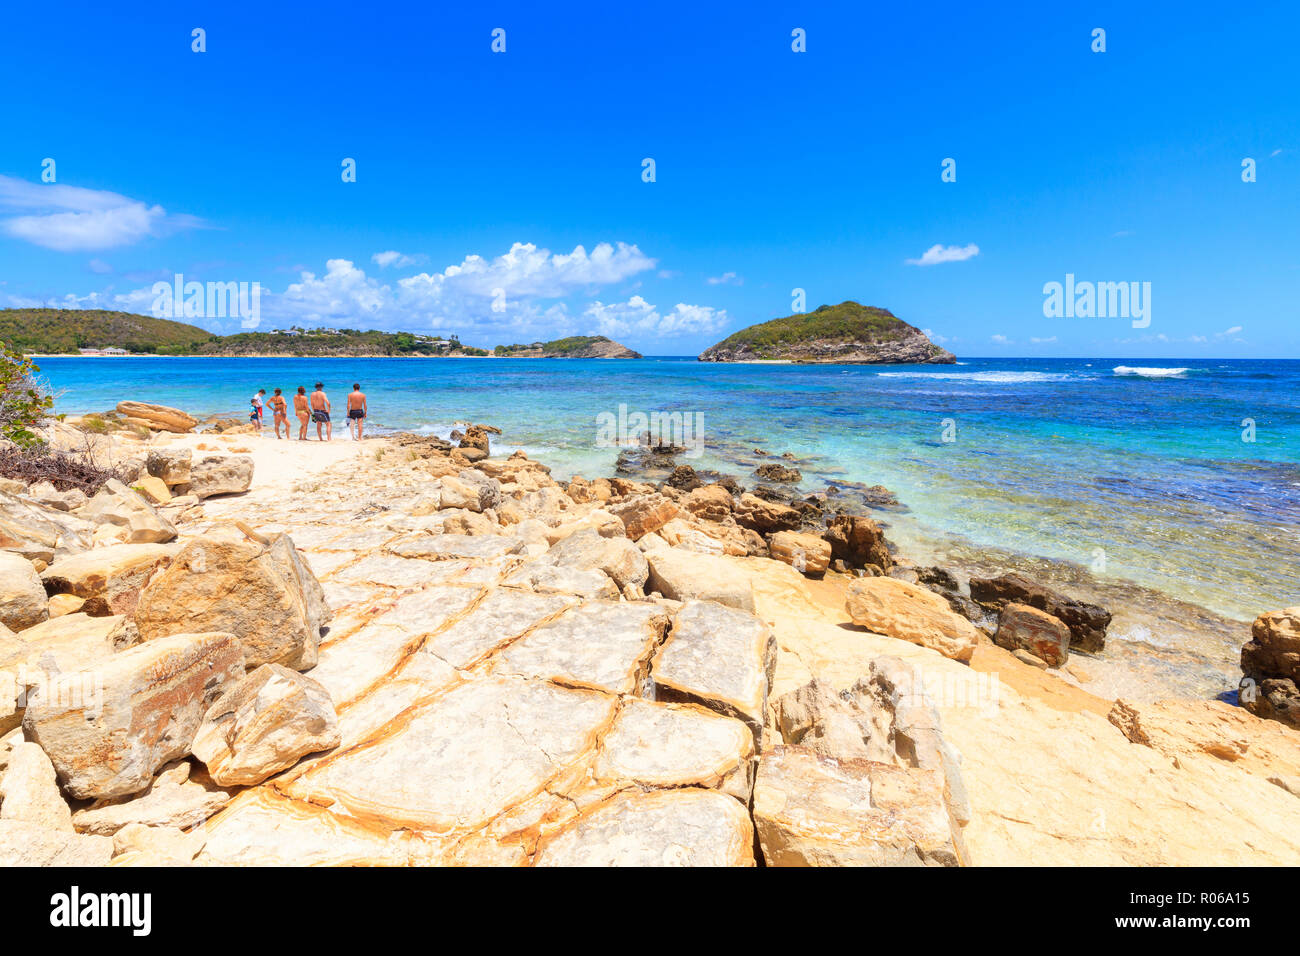 Les gens sur des rochers surplombant la mer de cristal, Half Moon Bay, Antigua-et-Barbuda, les îles sous le vent, Antilles, Caraïbes, Amérique Centrale Banque D'Images